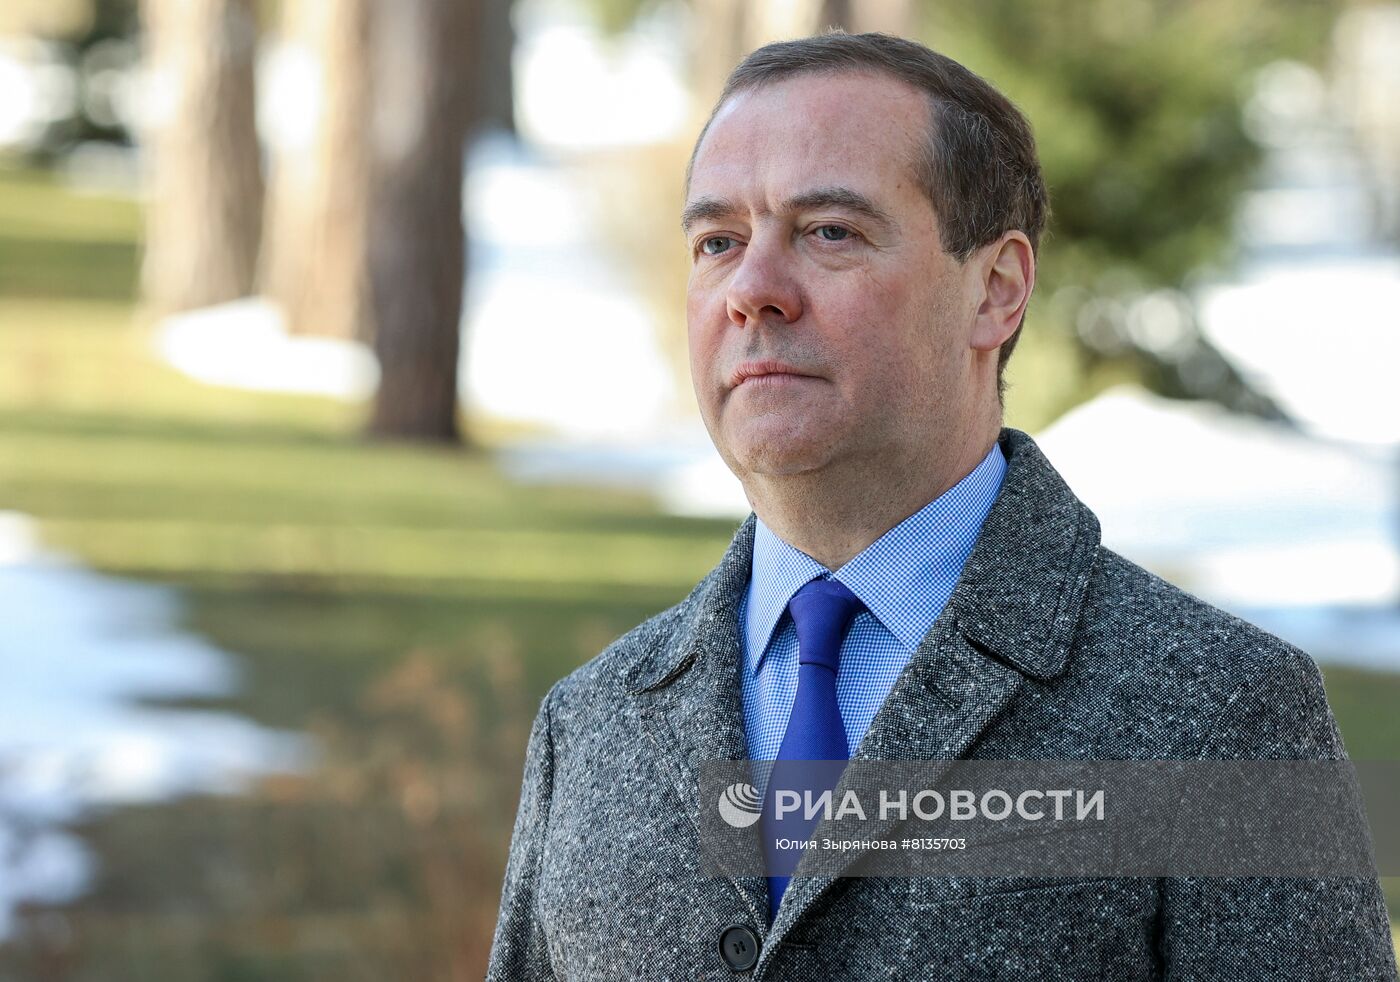 Зампред Совбеза РФ Д. Медведев поздравил российских женщин с праздником - Международным женским днём